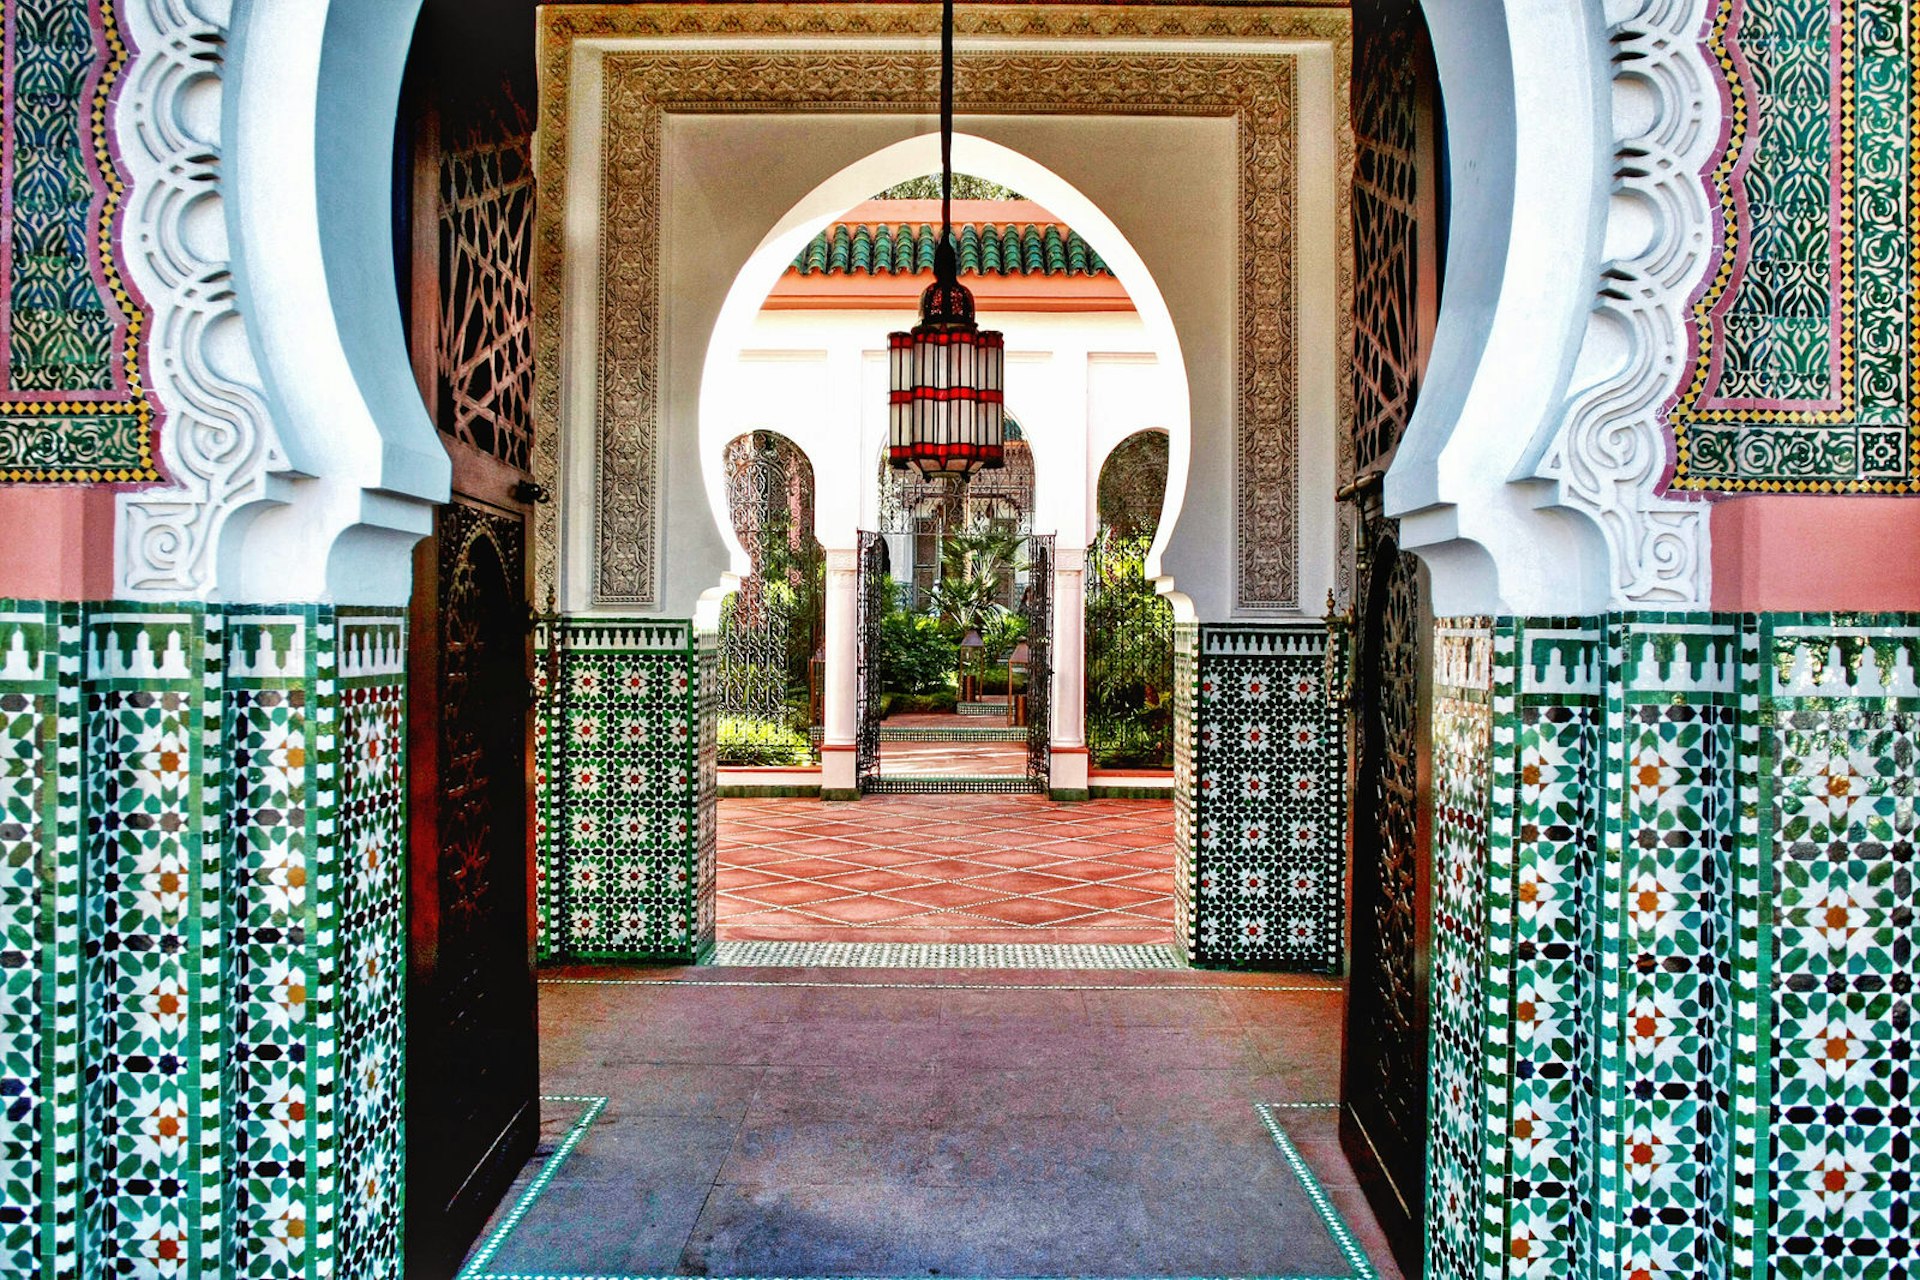 Hammam Marrakesh: Mẹo và Lời Khuyên Tại Spa Tốt Nhất: Điều gì khiến Hammam Marrakesh trở thành spa tốt nhất? Tất cả những gì bạn cần làm là thưởng thức trải nghiệm mát-xa độc đáo của họ. Với những mẹo và lời khuyên hữu ích, Hammam Marrakesh sẽ mang đến cho bạn một trải nghiệm thư giãn và thoải mái tuyệt vời.